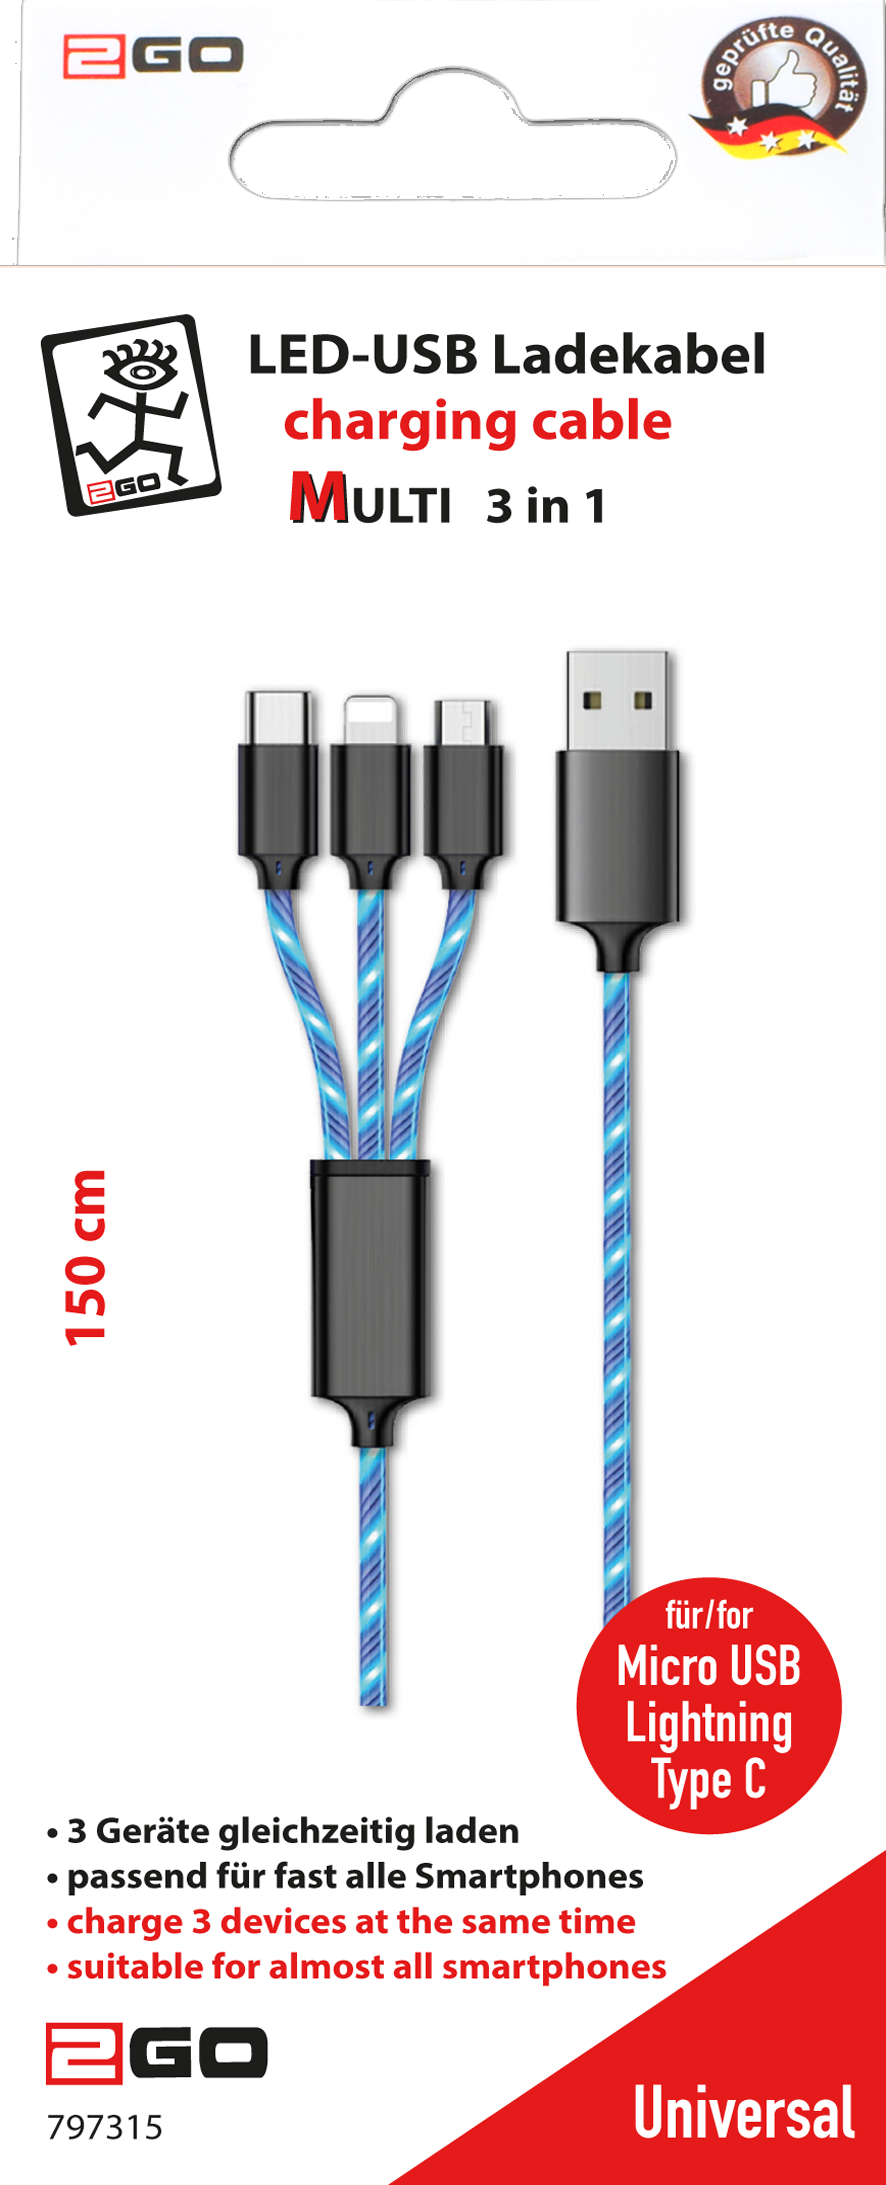 2GO 797315 USB Kabel 1,5 m USB B USB C/Micro-USB B/Lightning Schwarz - Blau (797315)